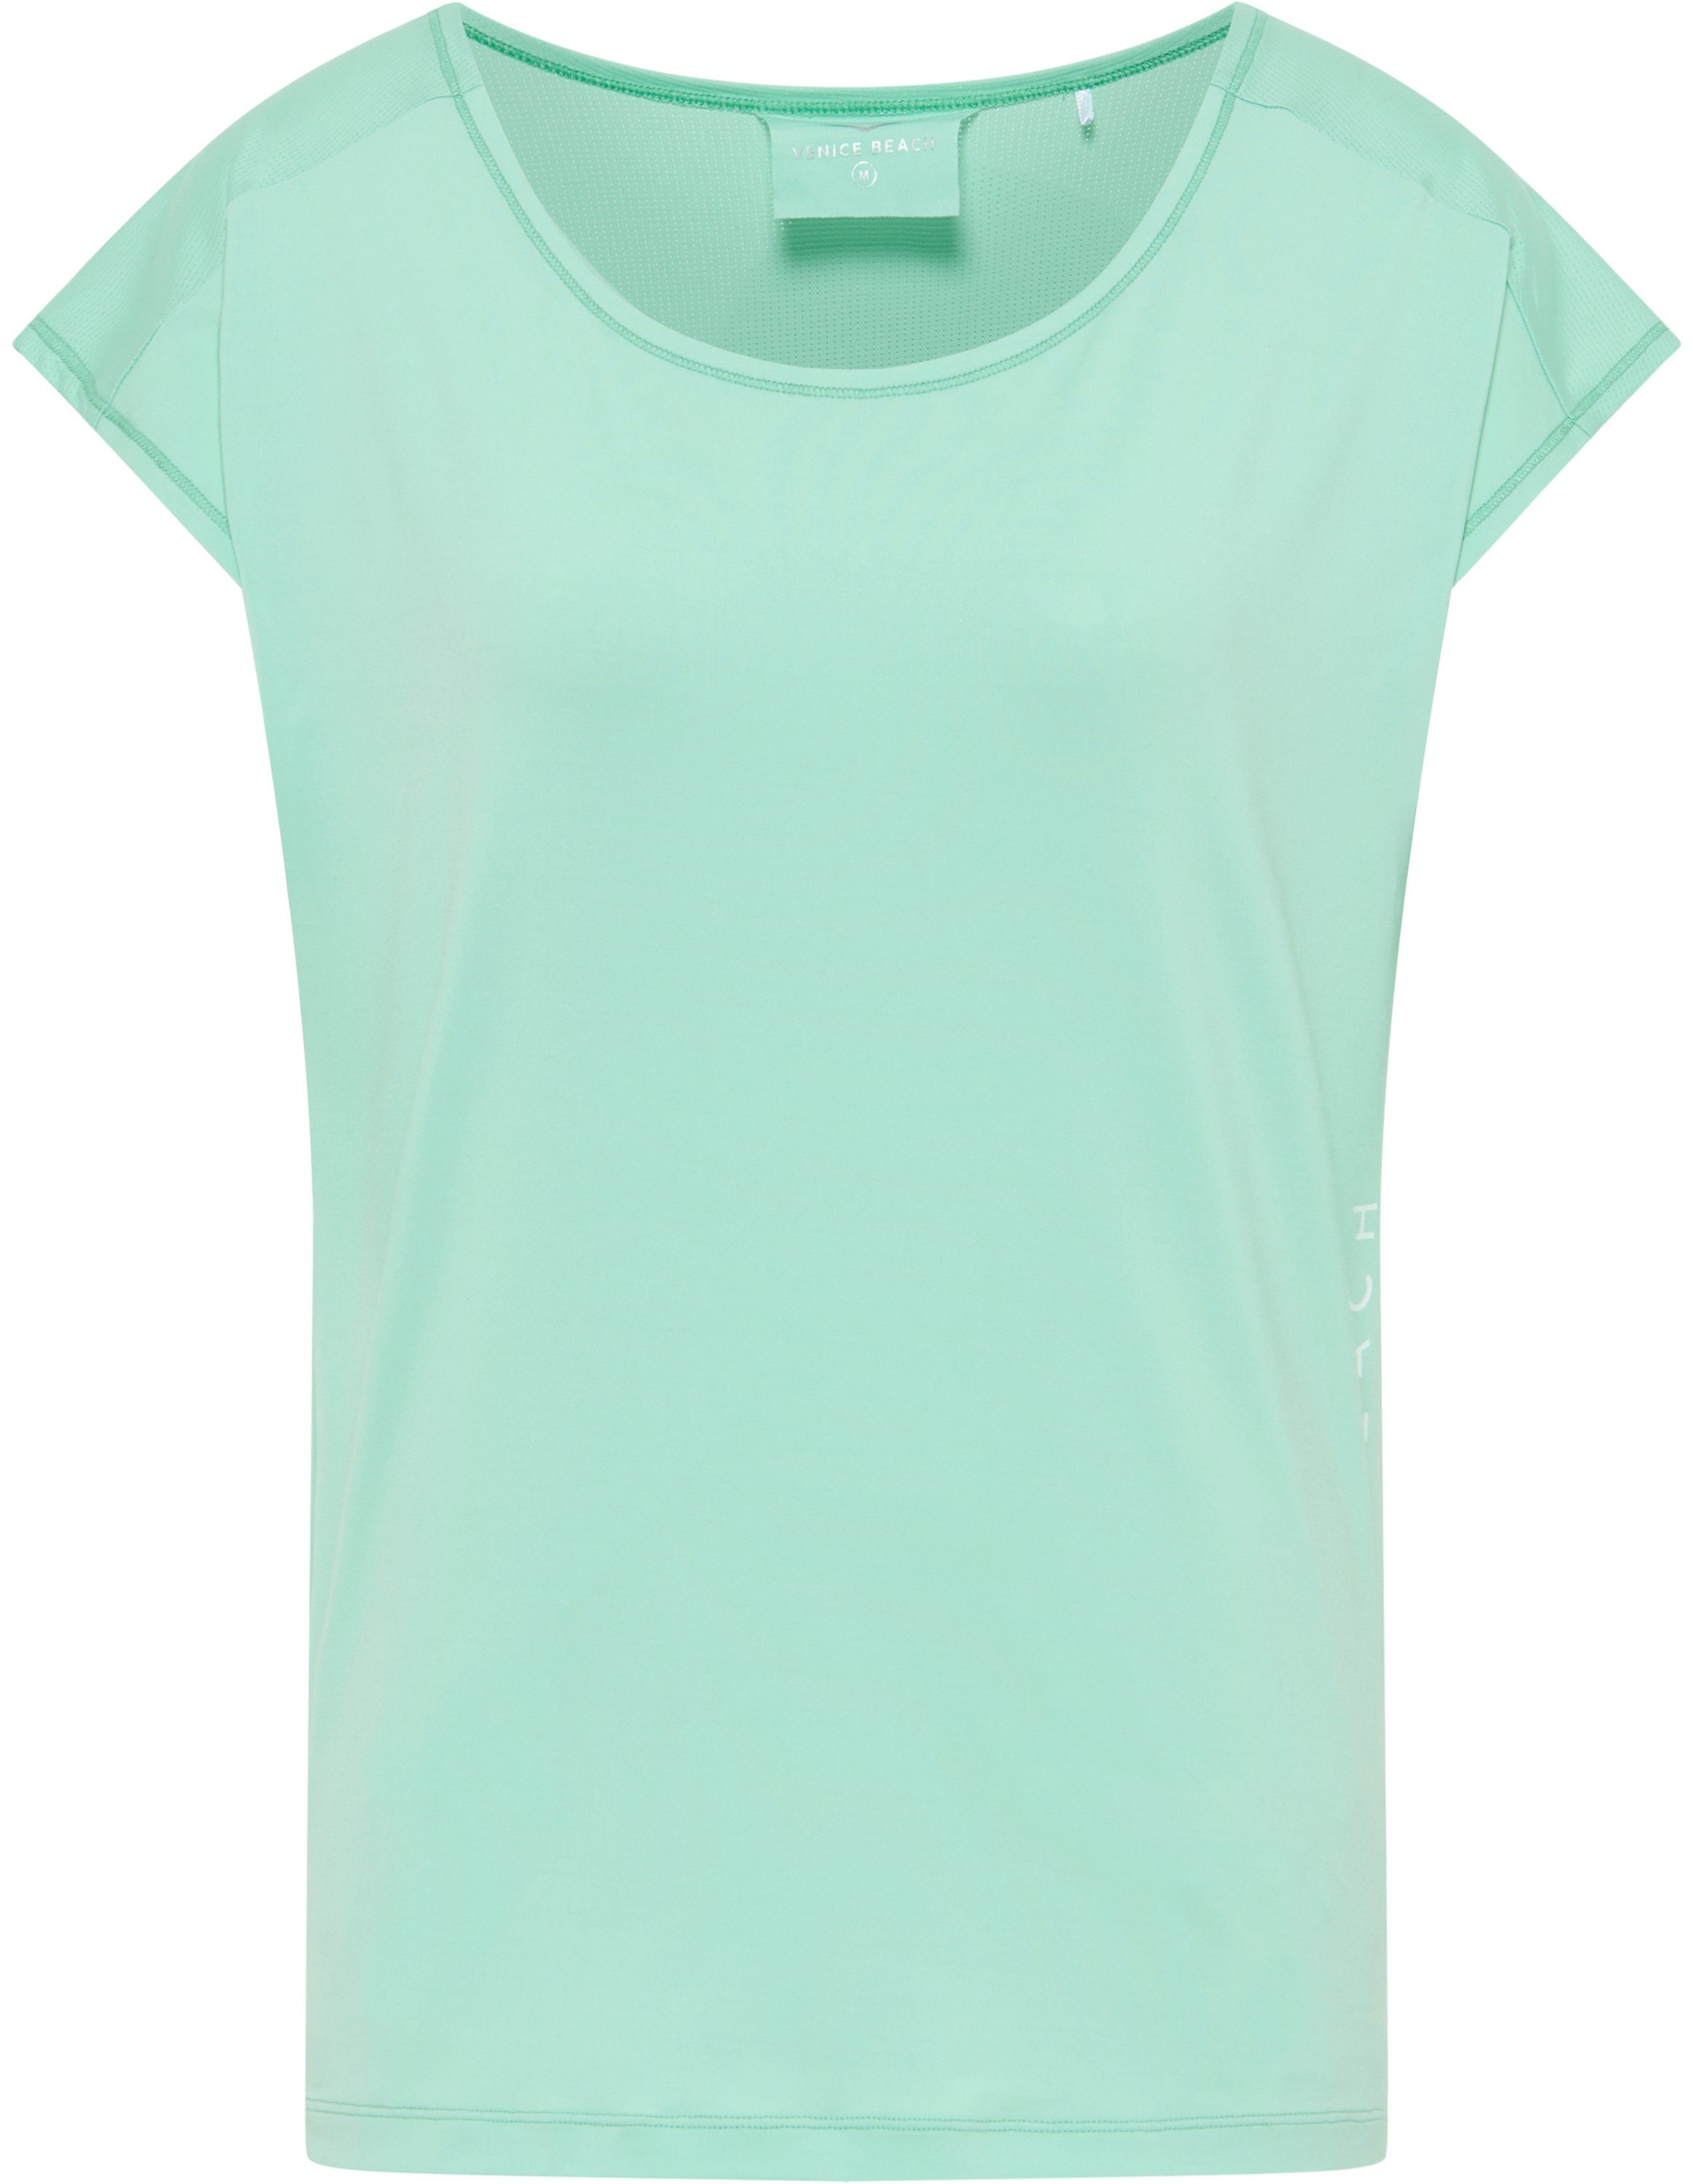 Venice Beach T-Shirt green ALICE galaxy VB T-Shirt